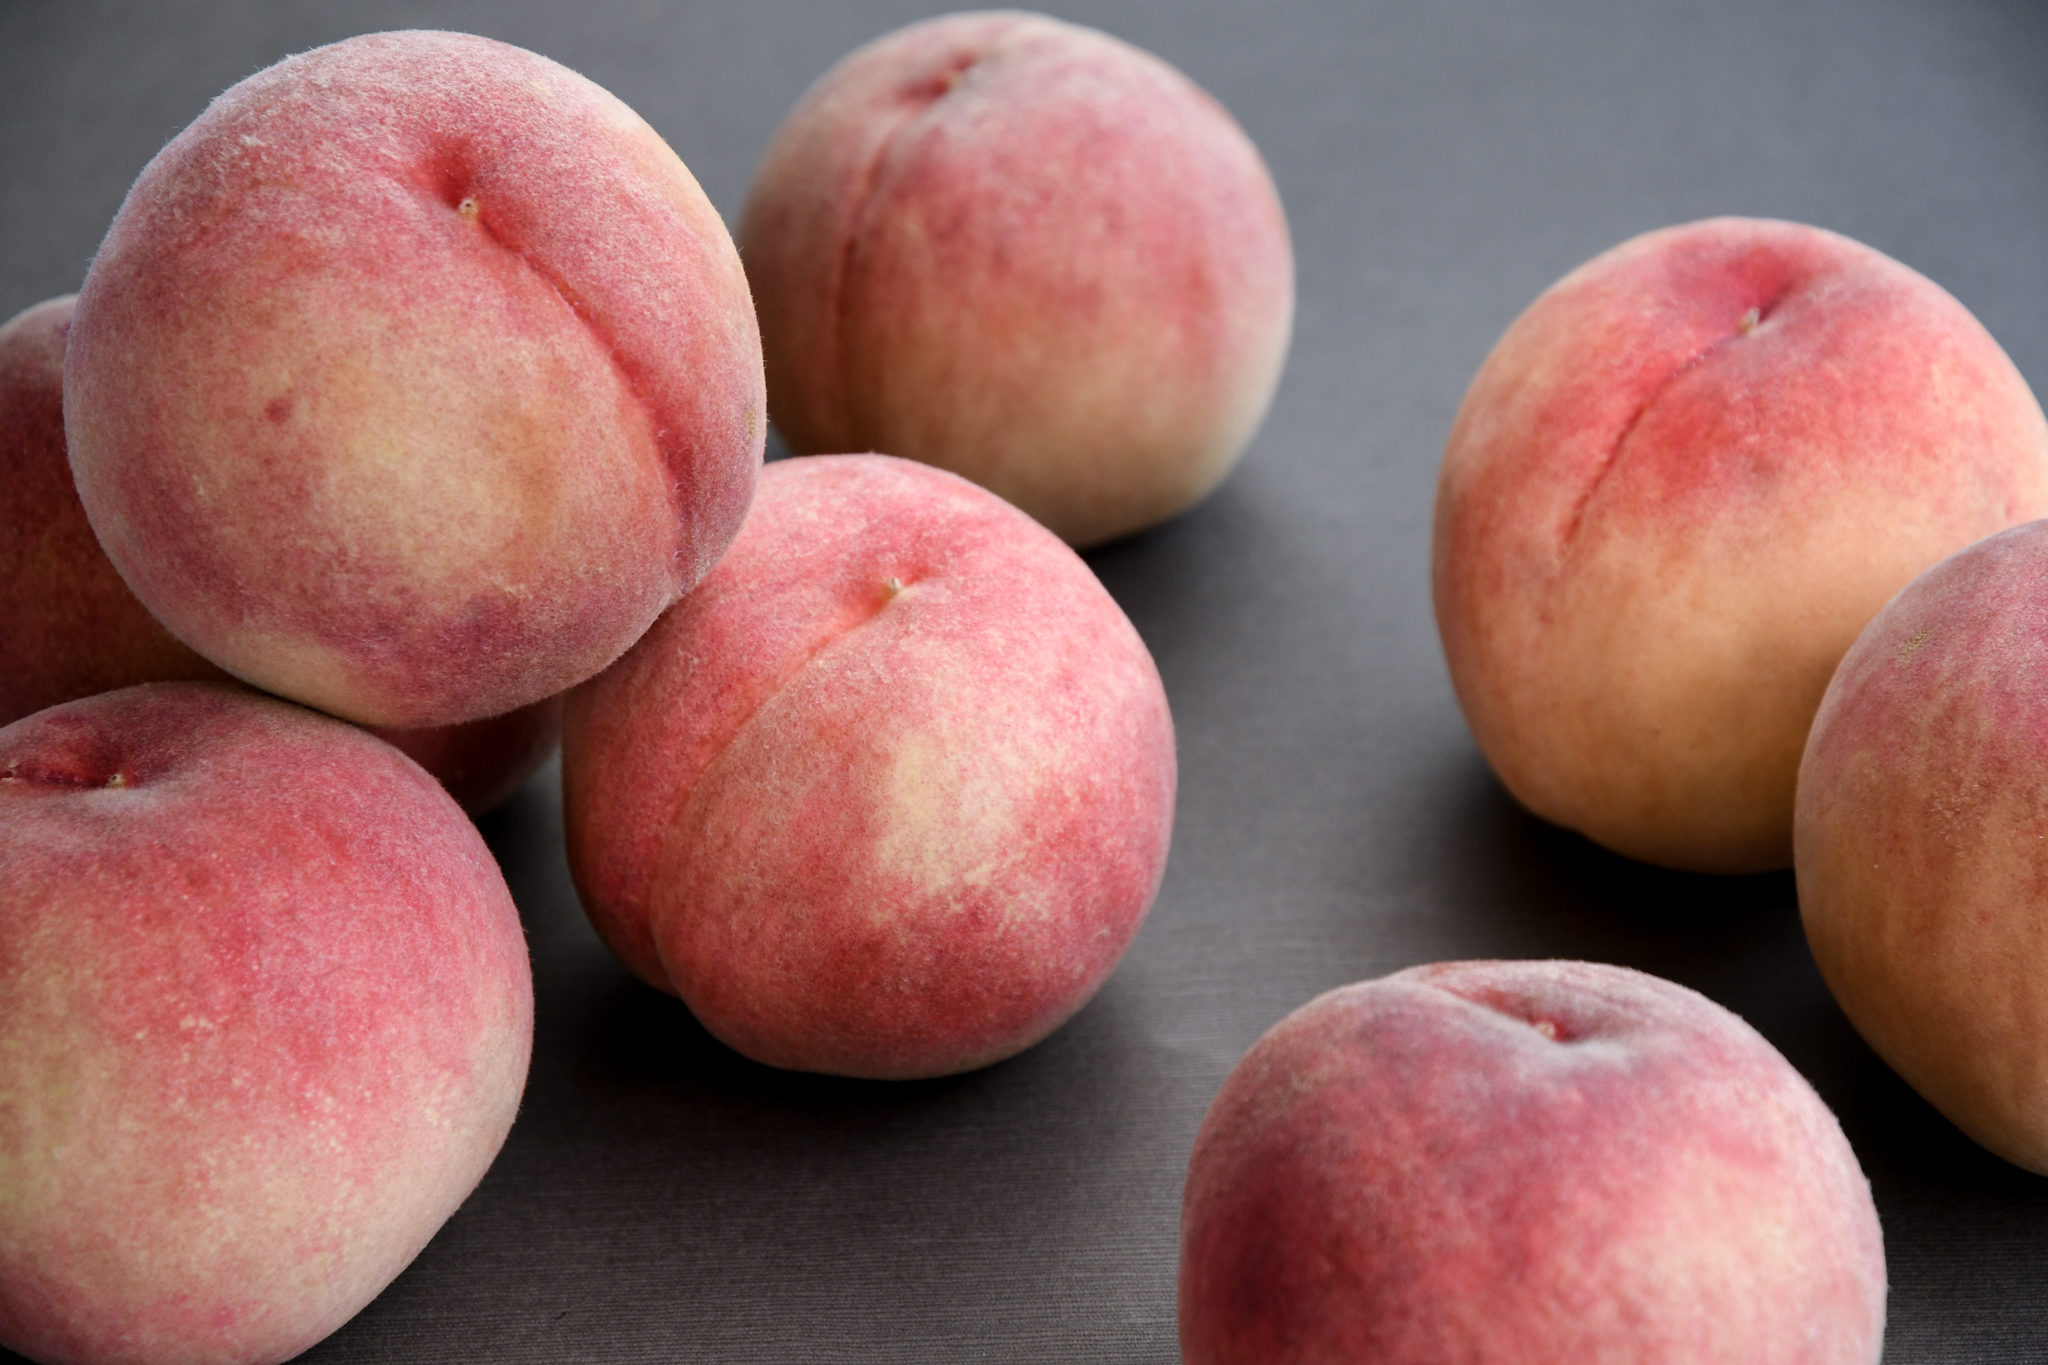 ポール ボキューズ 桃から桃へ旬のバトンリレー 夏の間ずっと旬の美味しさが味わえる福島県の白桃を ボキューズブランドのシェフ4人がそれぞれのスタイルでデザートに Newscast